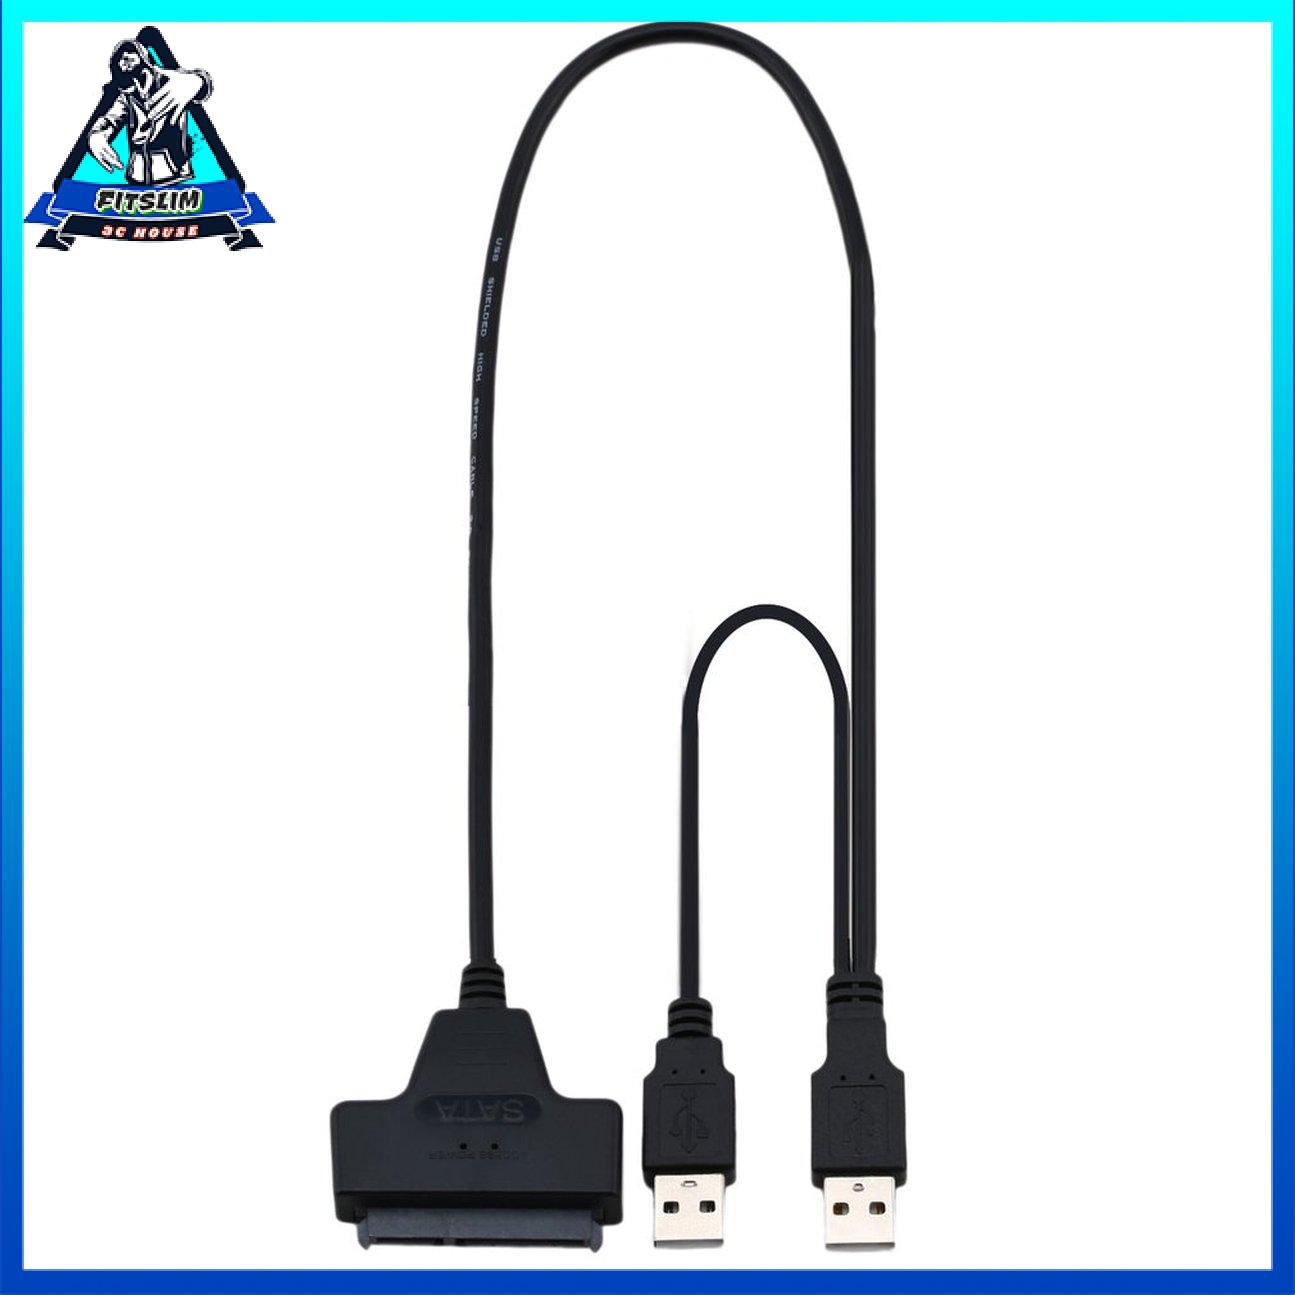 Cáp USB2.0 đến SATA 22Pin cho Ổ cứng thể rắn HDD 2,5 inch